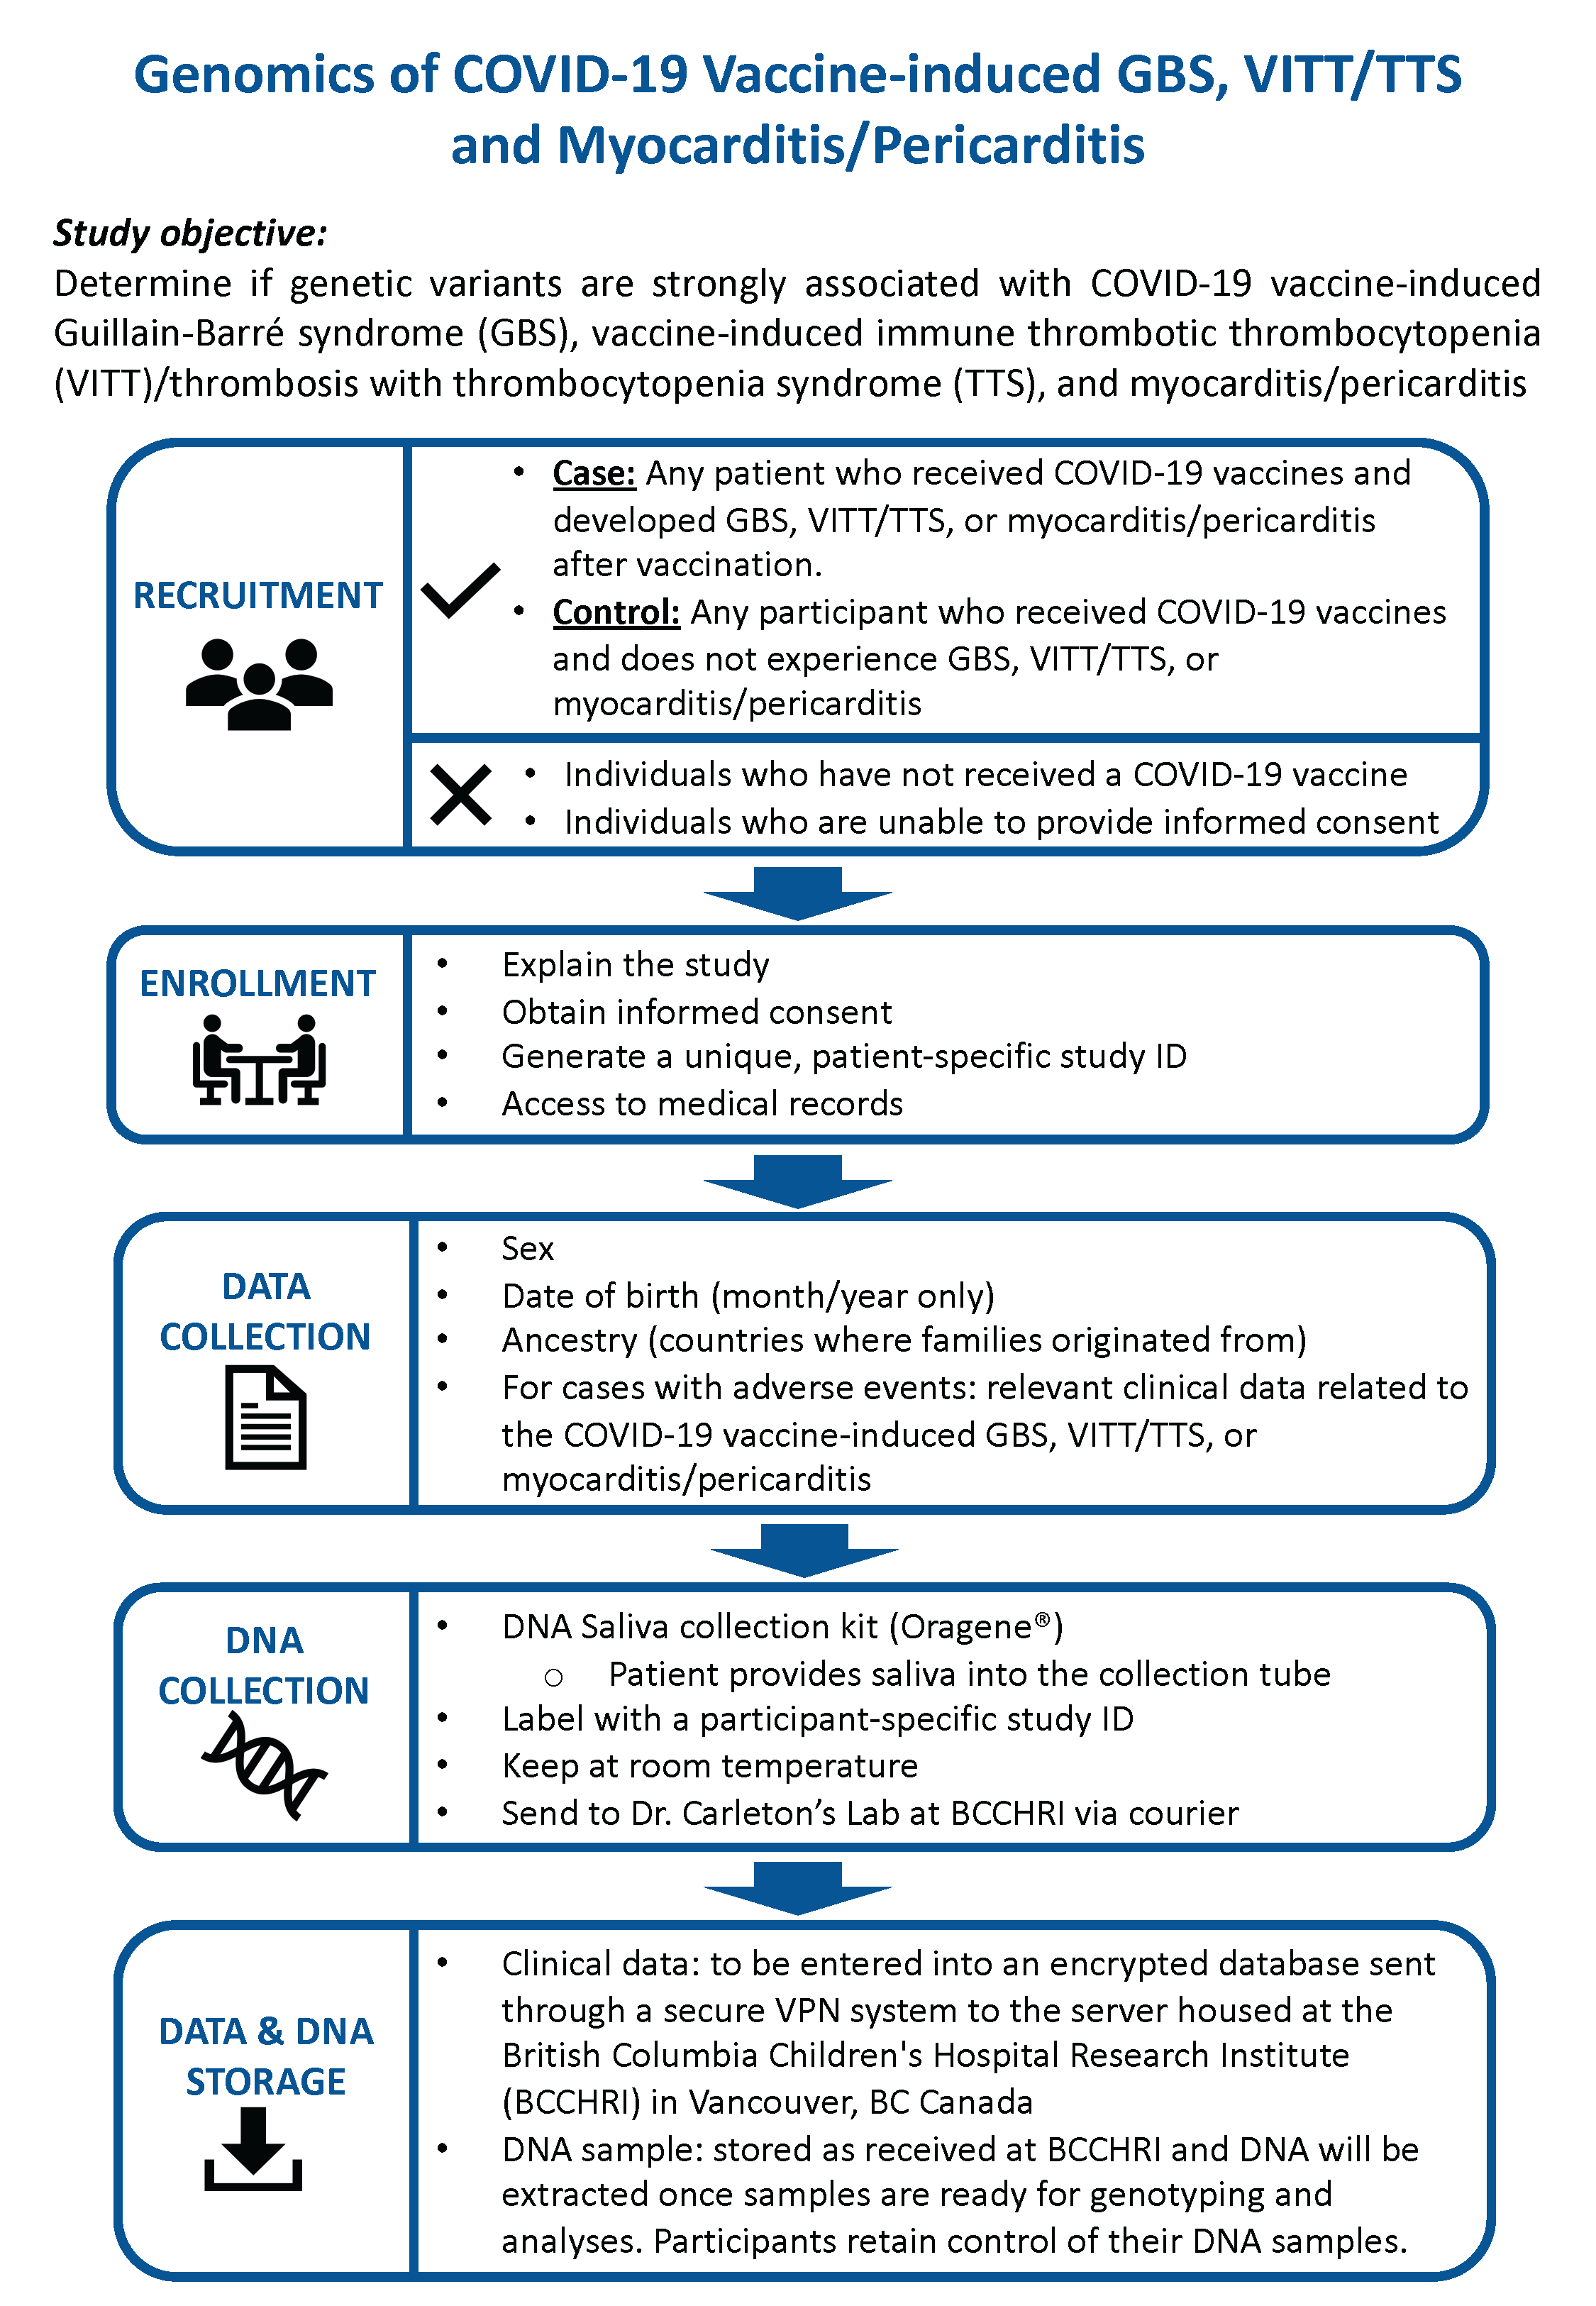 Figure 1 Overview of genomics project methodology